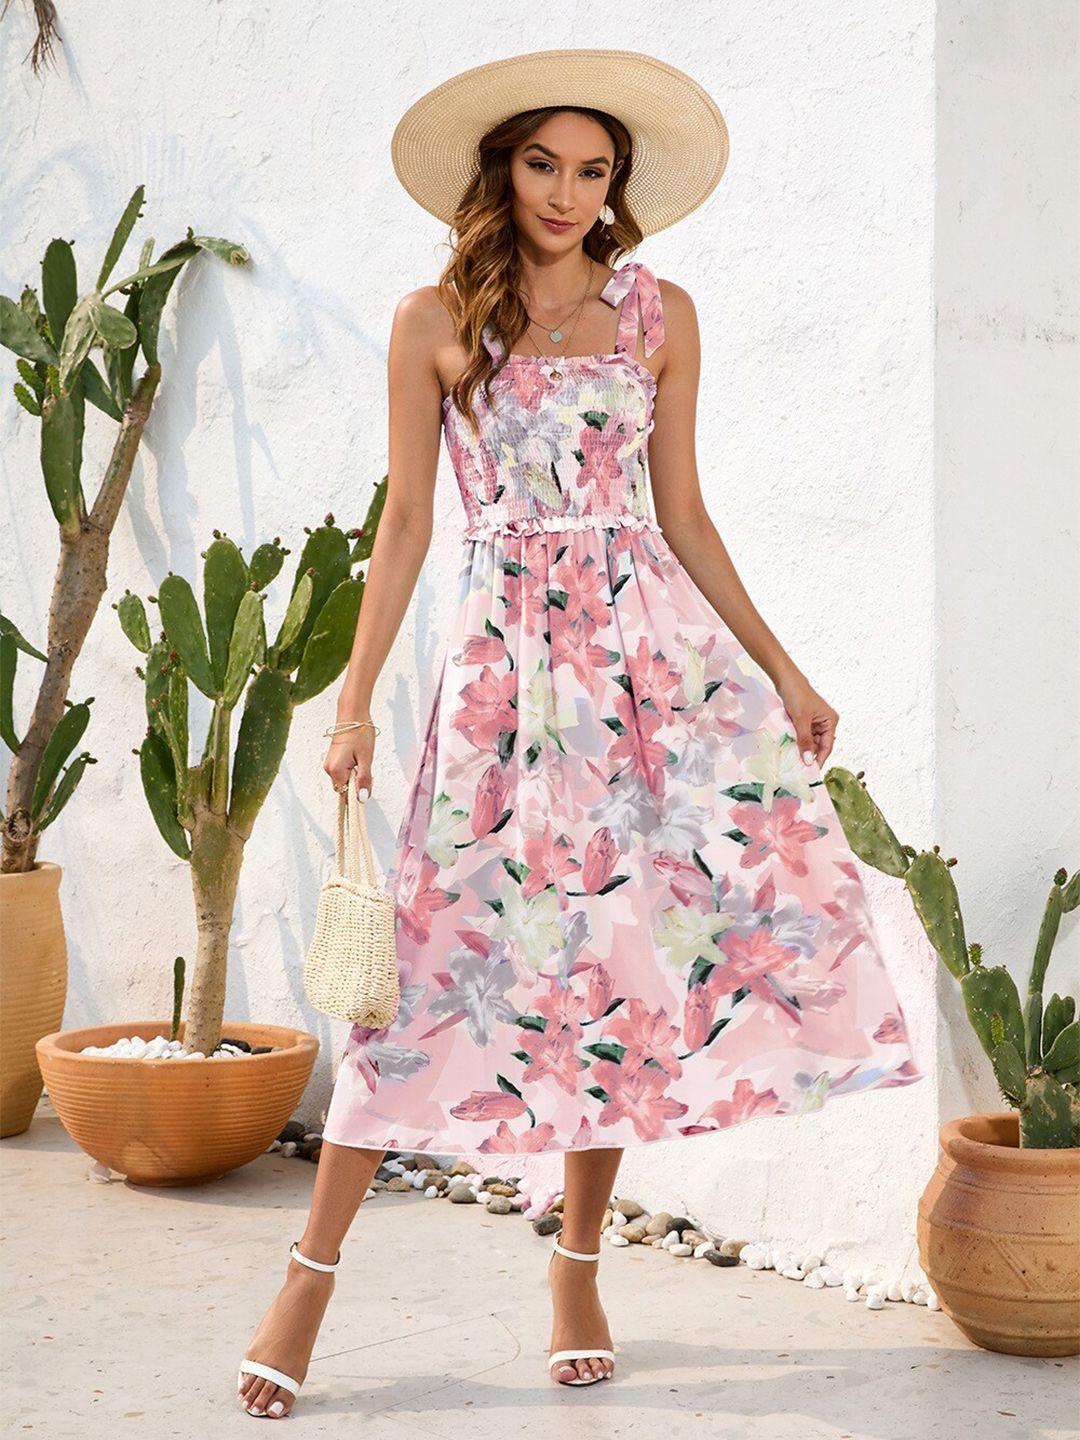 stylecast white & pink floral printed shoulder straps smocked fit & flare dress